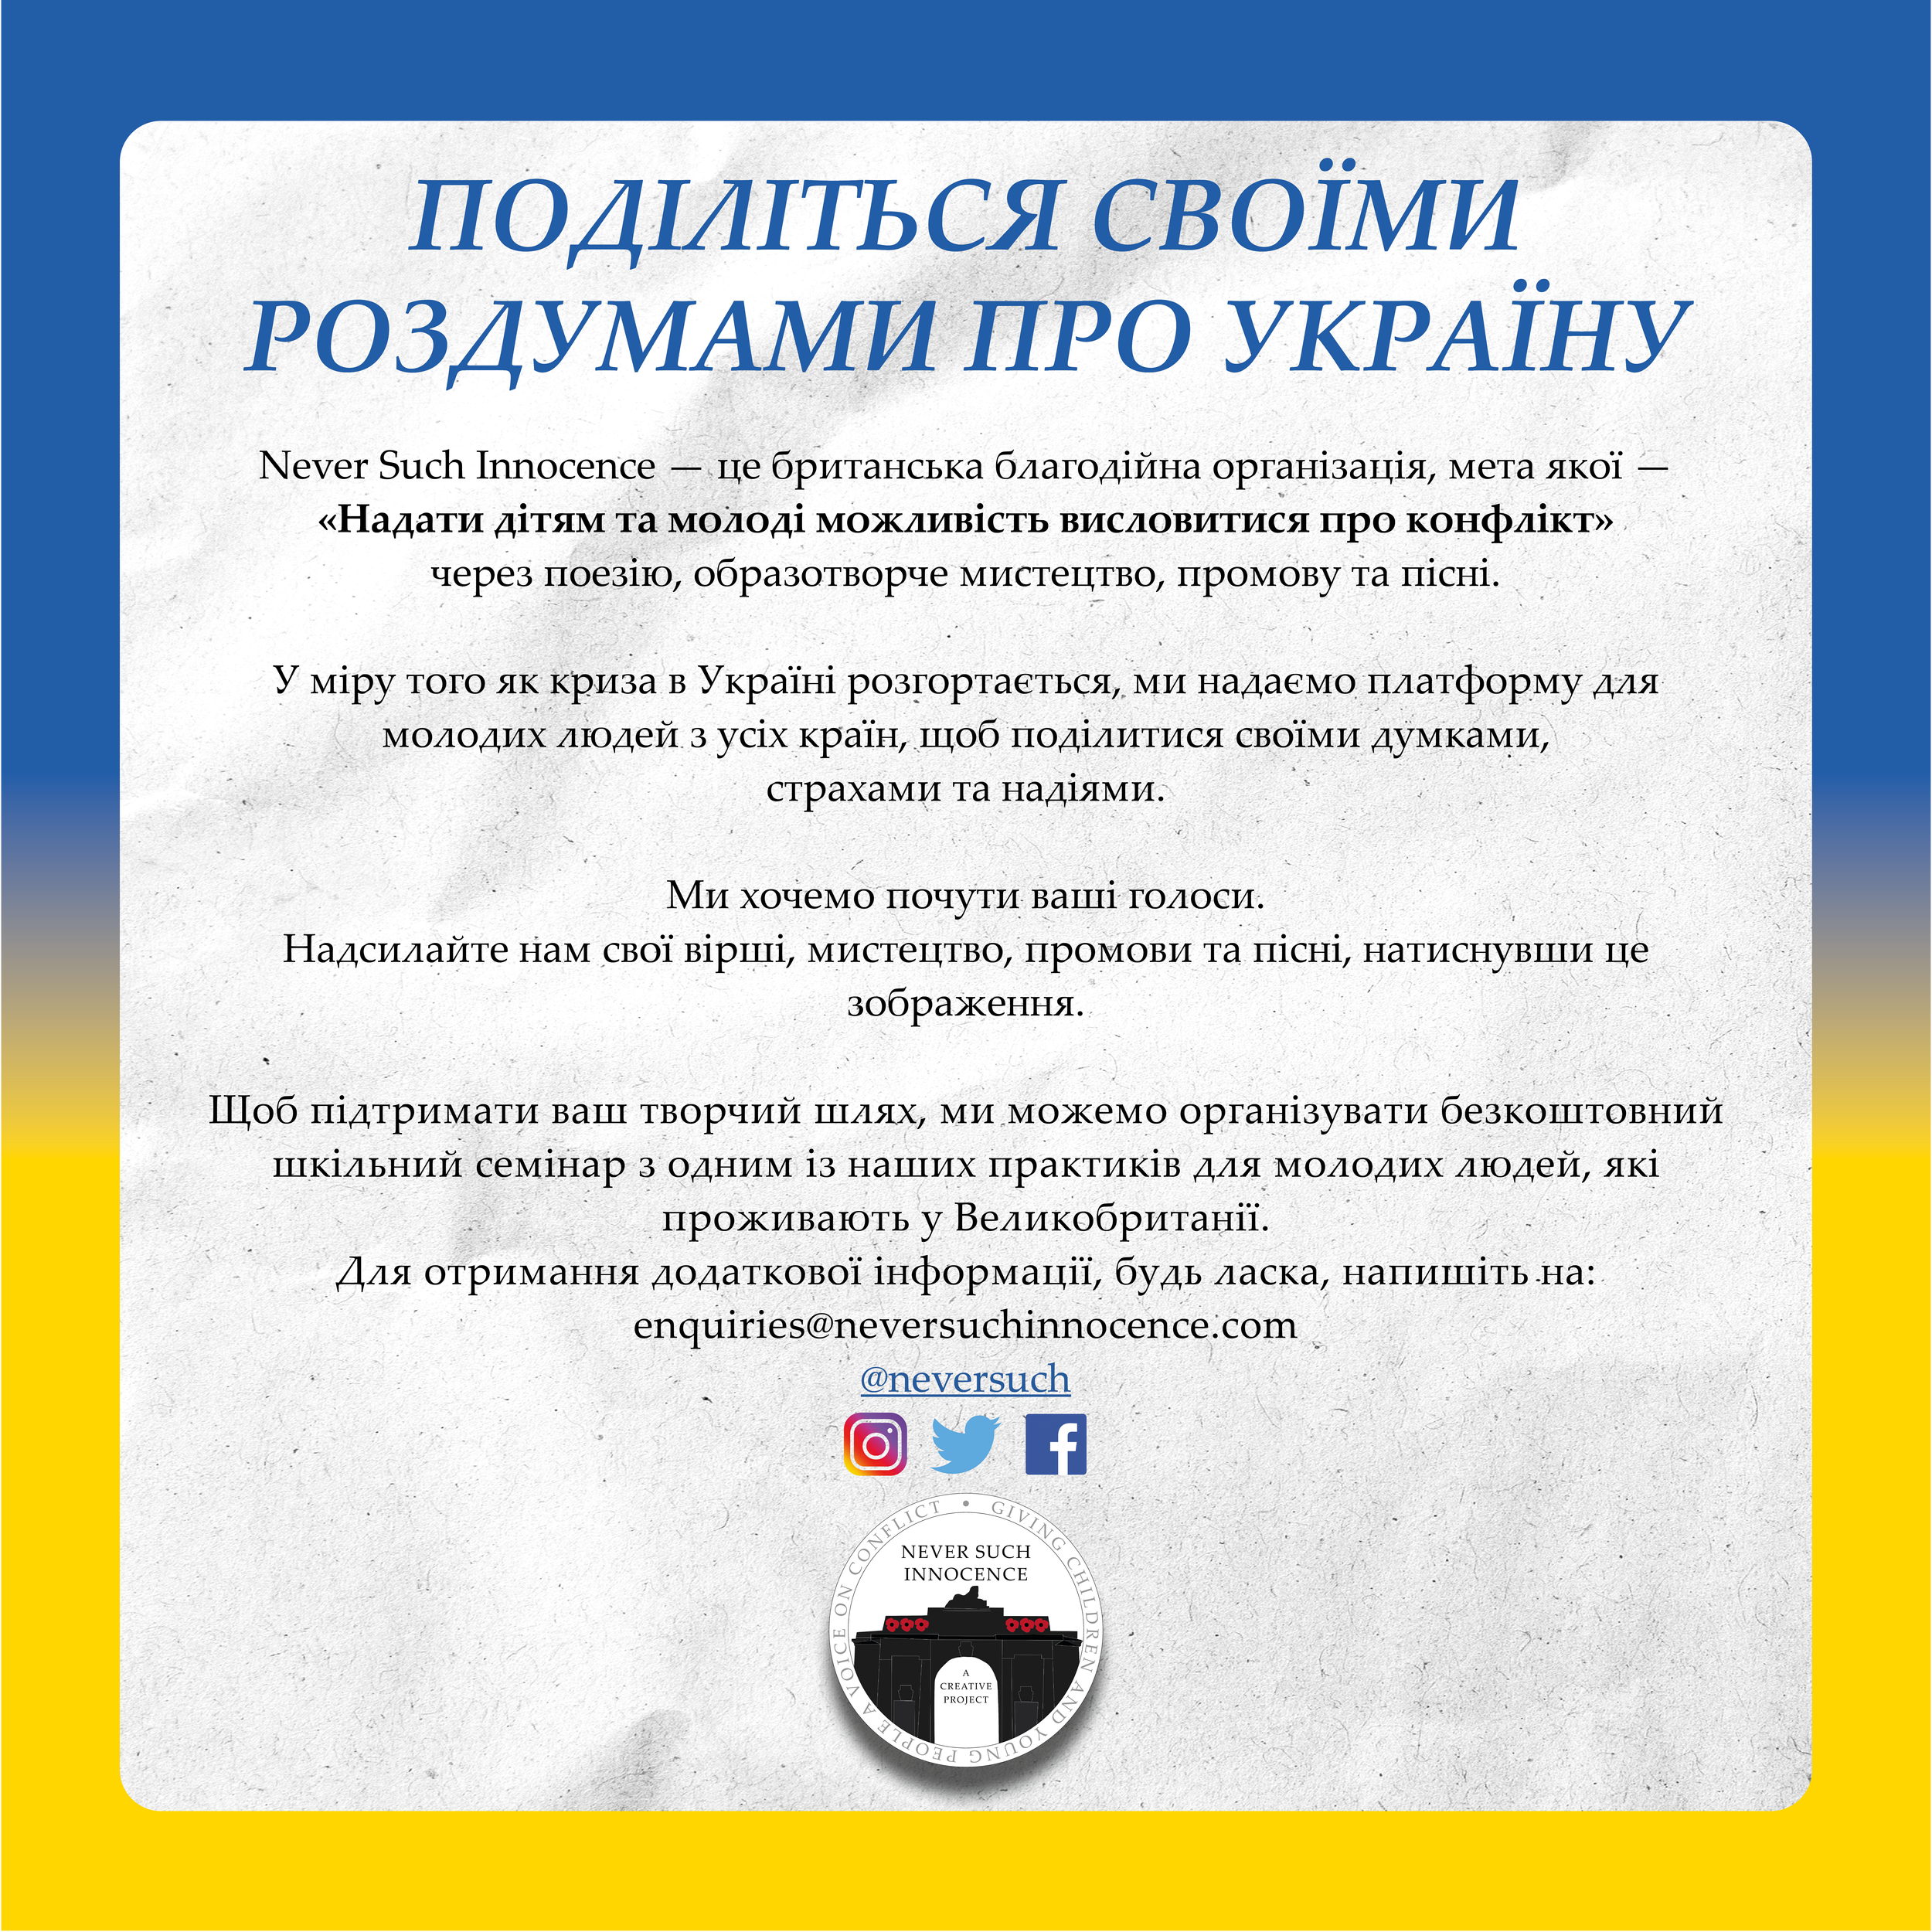 NSI Ukraine Flyer - Translation.png